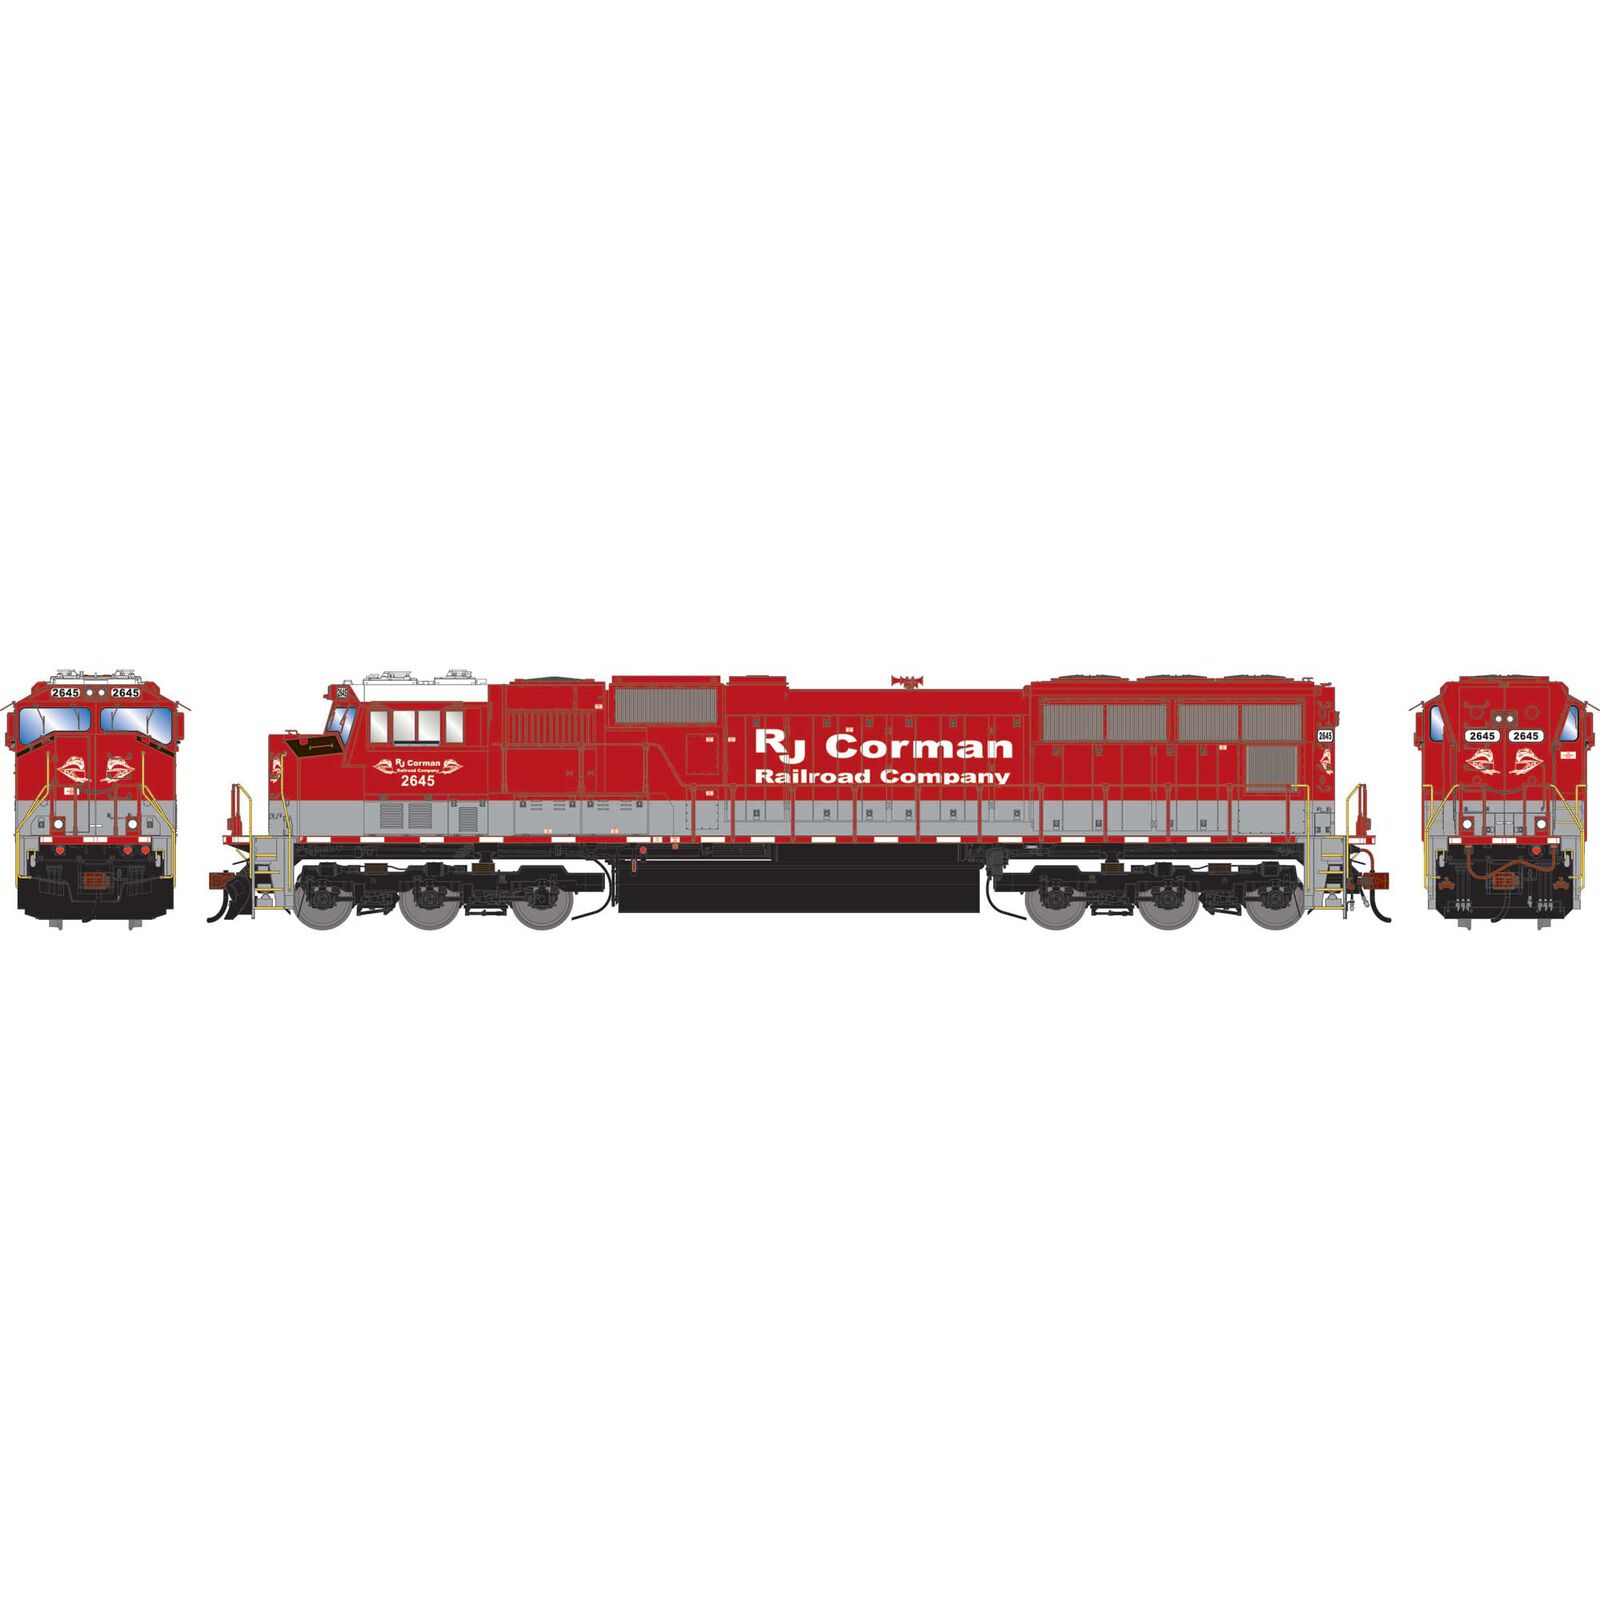 HO SD70M Locomotive with DCC & Sound, RJCC #2645